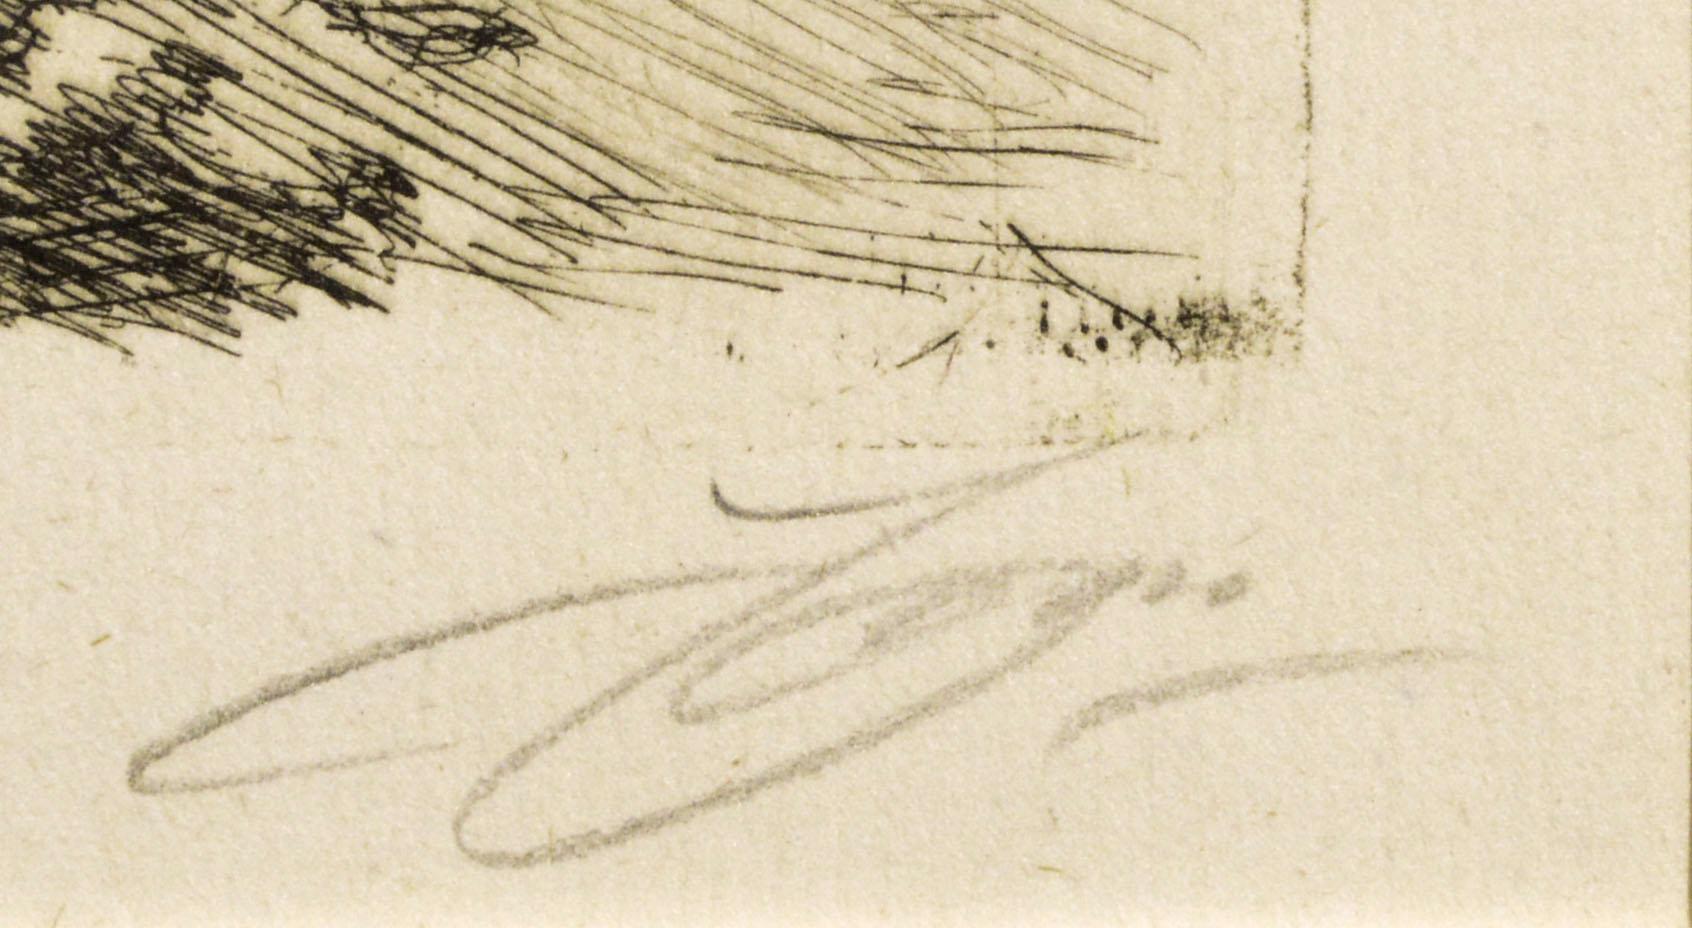 Lithographischer Druck von zwei nackten Badenden:: die das Wasser betreten:: von Anders Zorn (Schweden:: 18601920). Signiert vom Künstler in der rechten unteren Ecke. In der linken unteren Ecke (unter der Matte) befinden sich zwei Bleistiftindizes: